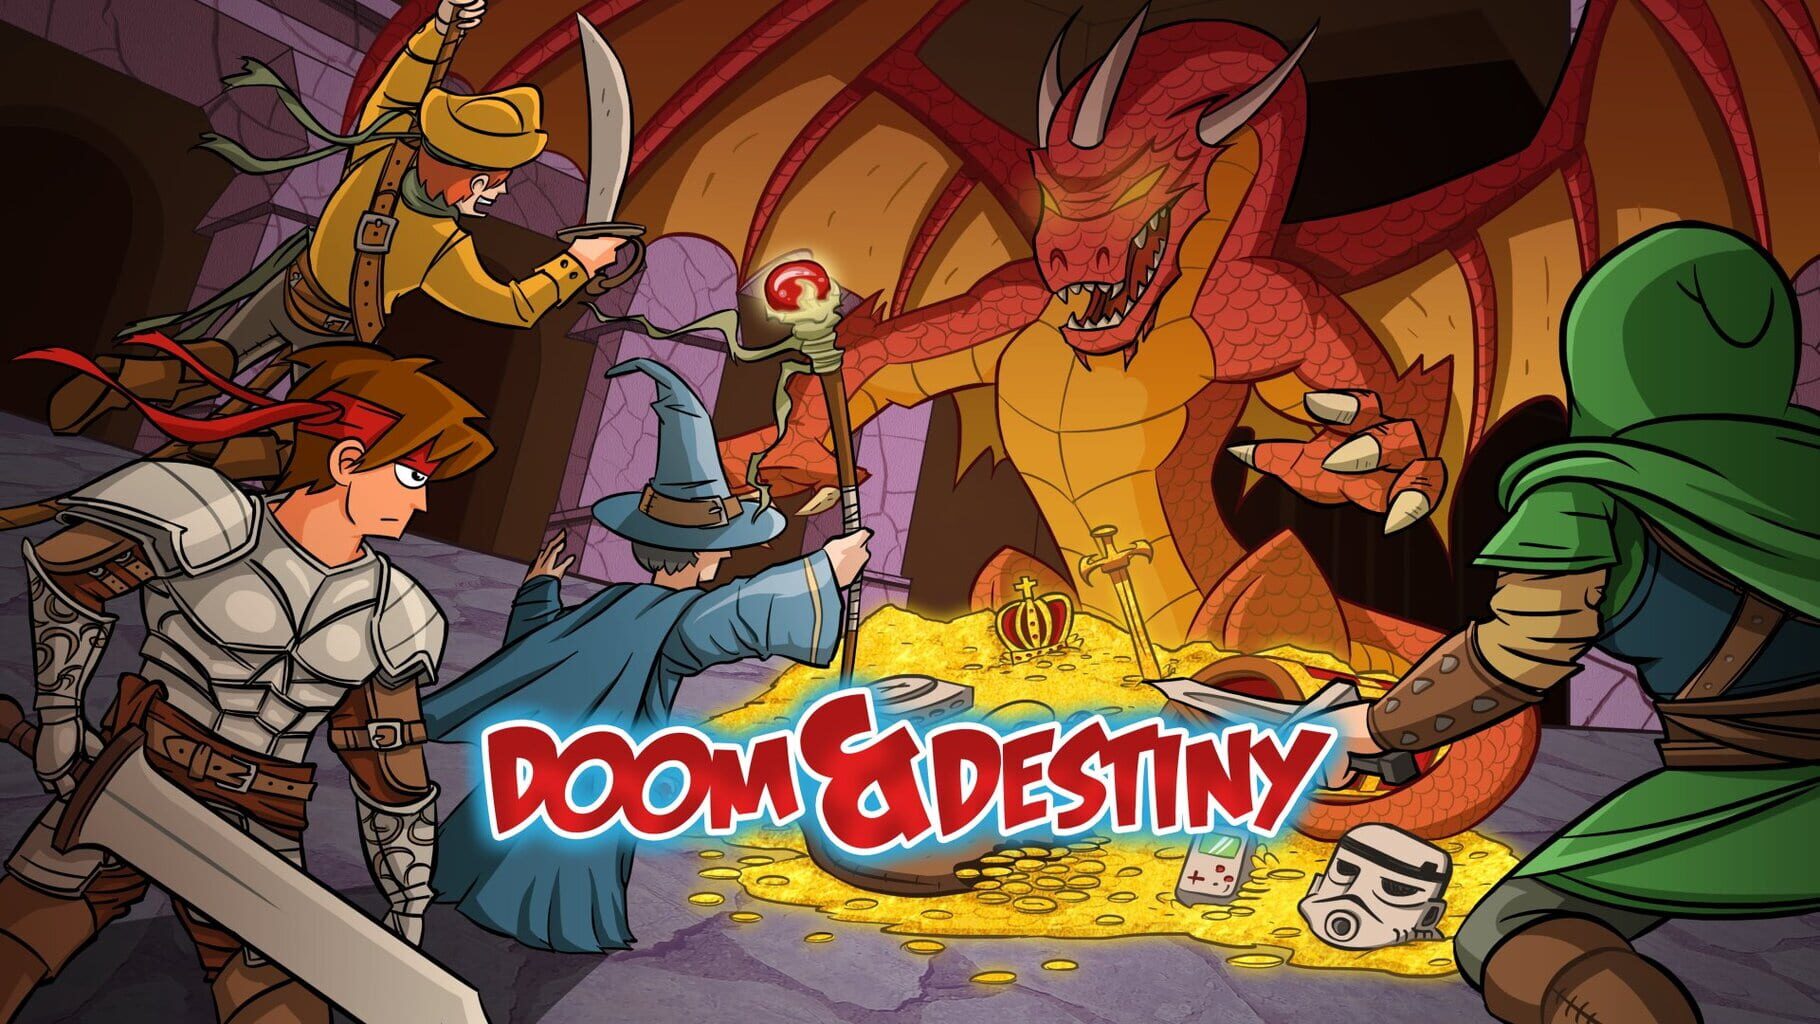 Doom & Destiny artwork